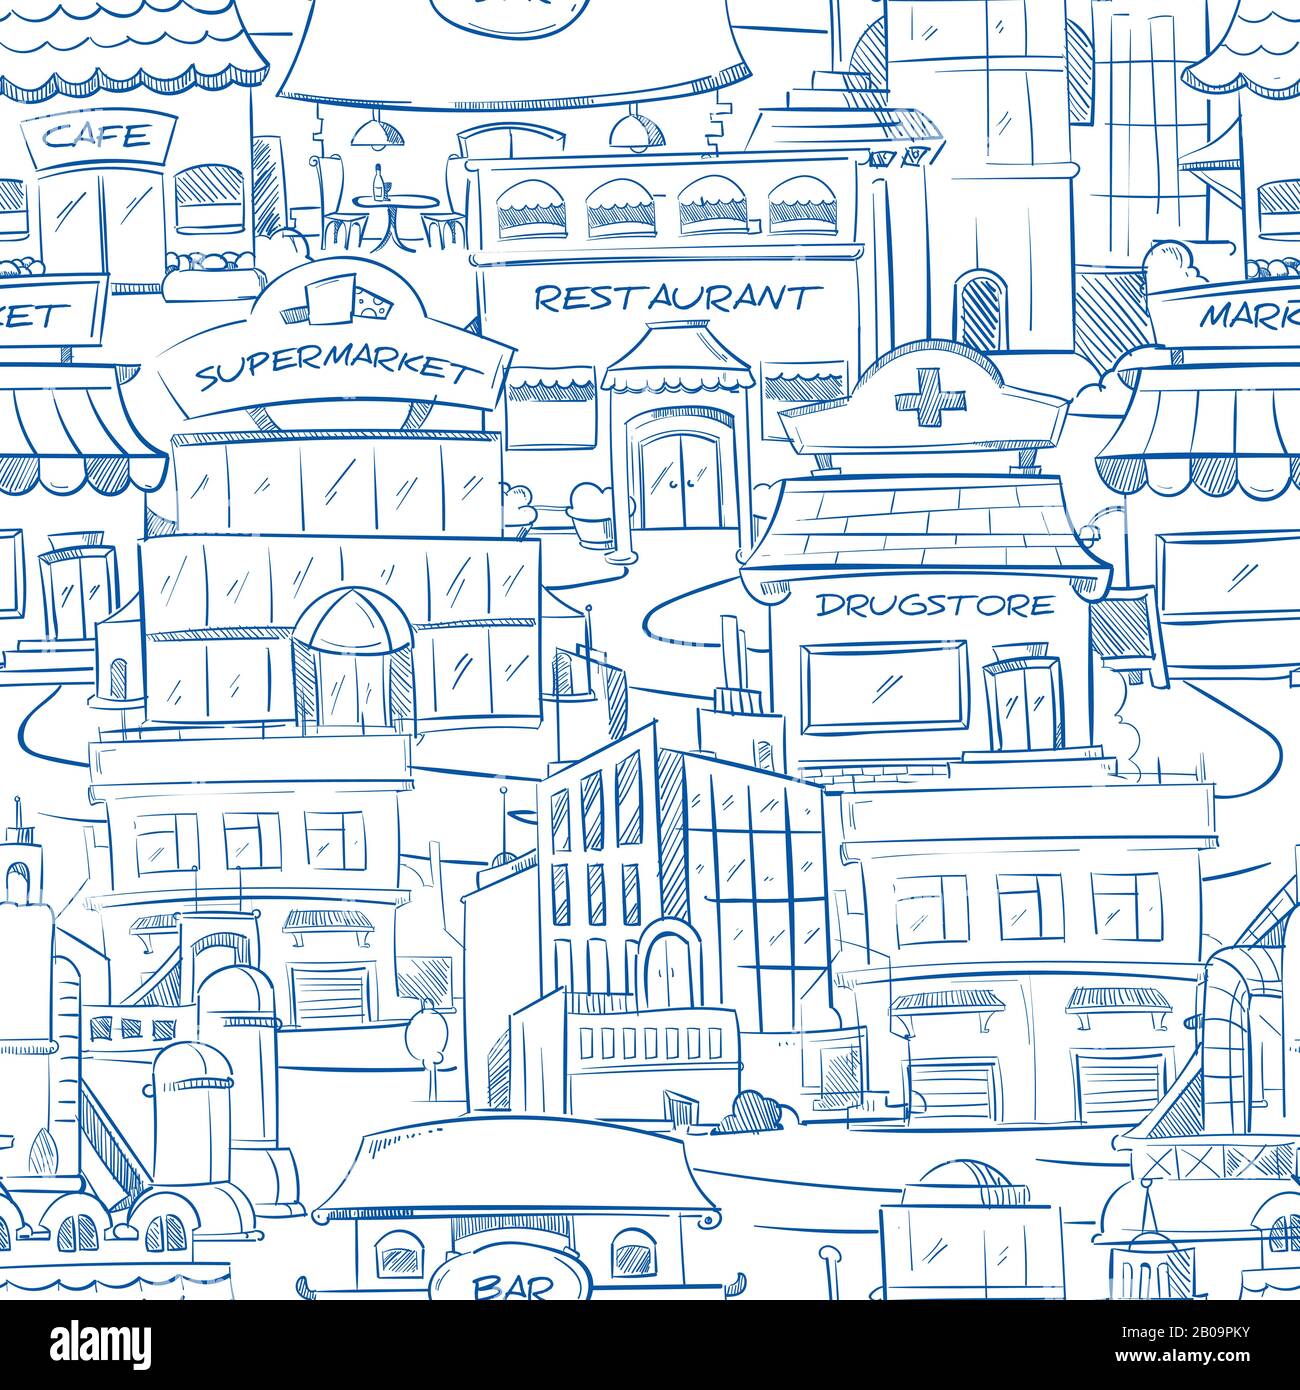 Stadt mit handgezeichneten Gebäuden Vektor Doodle Stadtpanorama nahtloser Hintergrund. Blick auf die Straße mit Restaurant und Café, Gebäude mit Supermarkt und Drogerie auf der Straße Illustration Stock Vektor